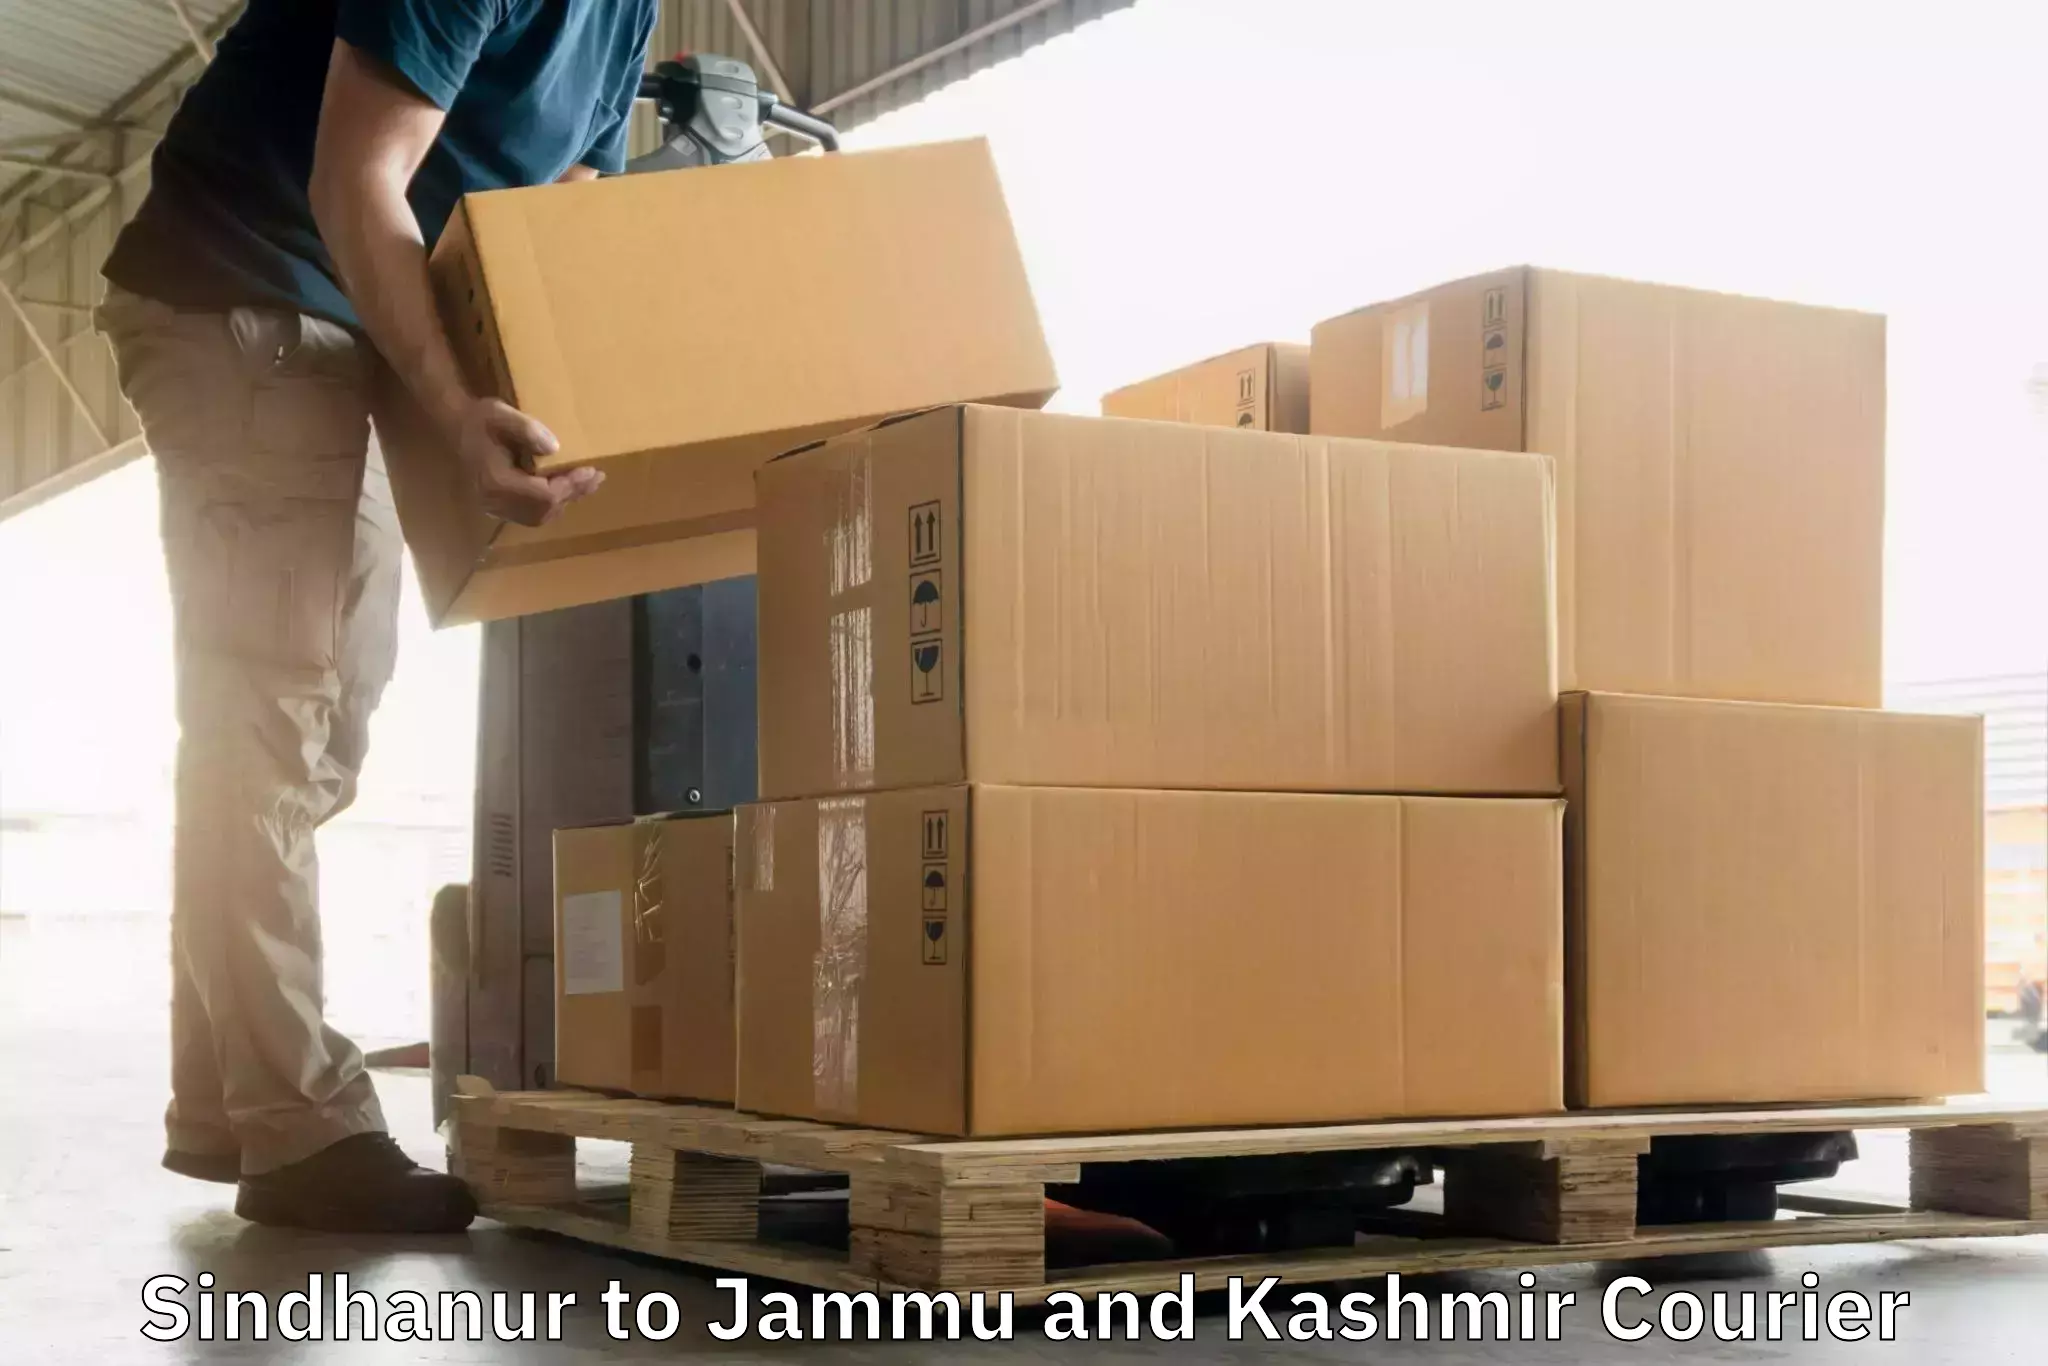 Comprehensive shipping network Sindhanur to Ramban